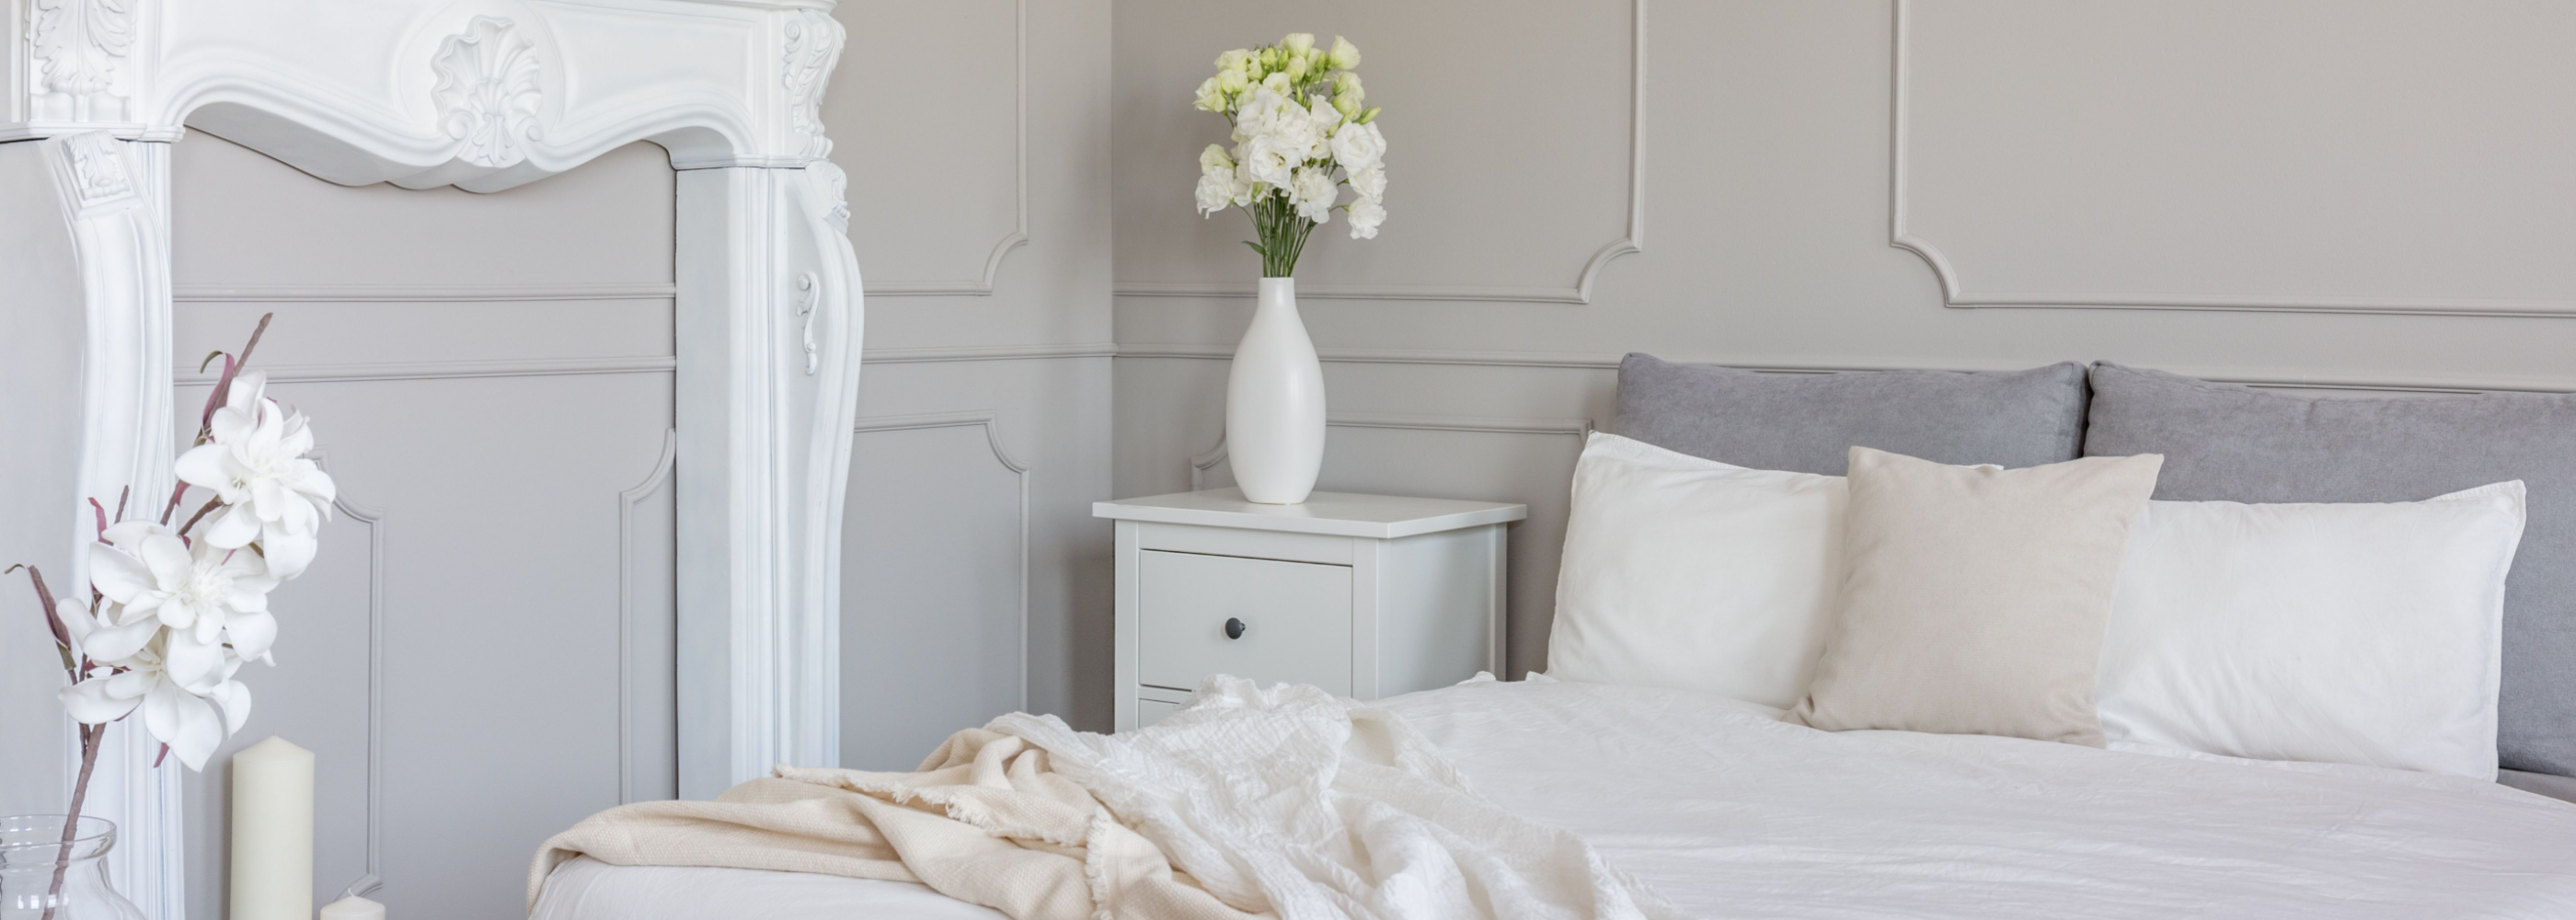 Ein Schlafzimmer mit einem weißen Bett und einer weißen Kommode.